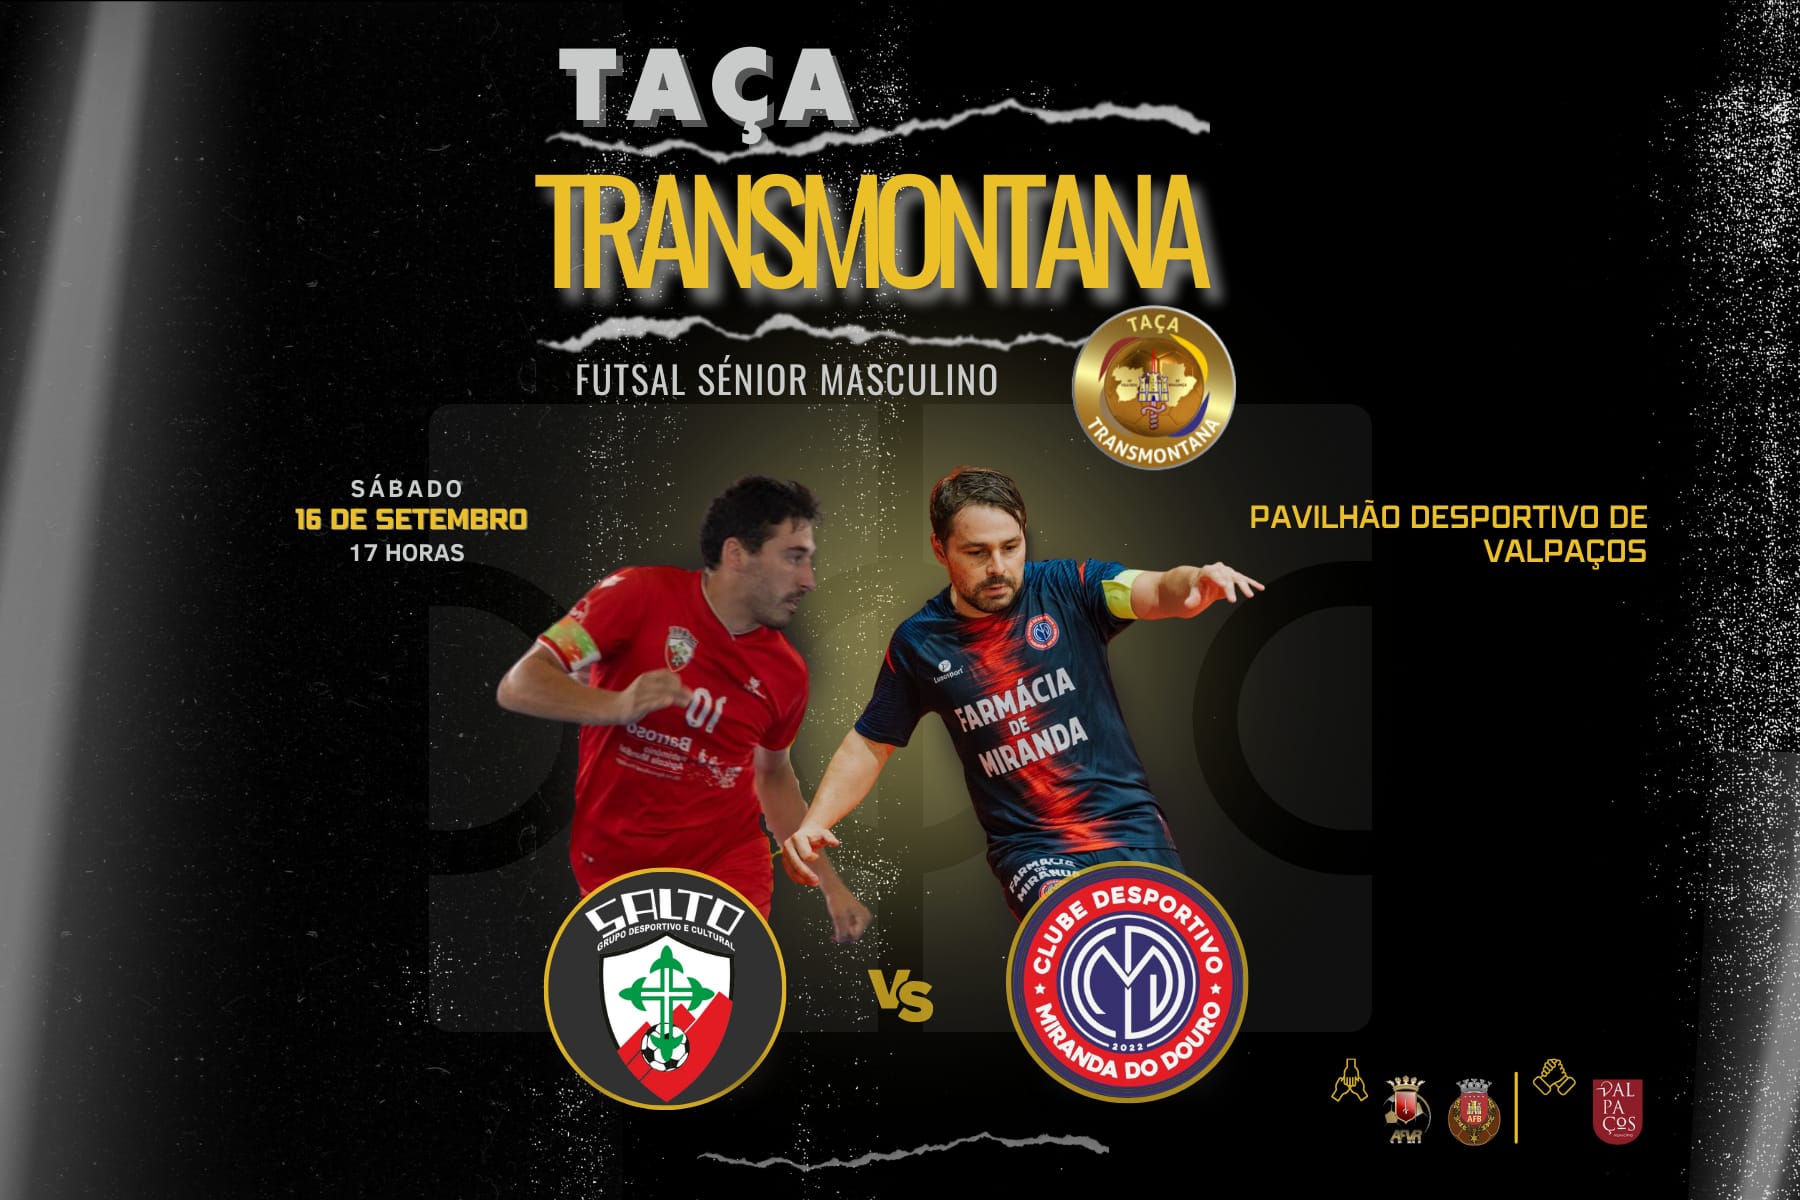 Taça Transmontana: GDC Salto e CD Miranda do Douro disputam o troféu